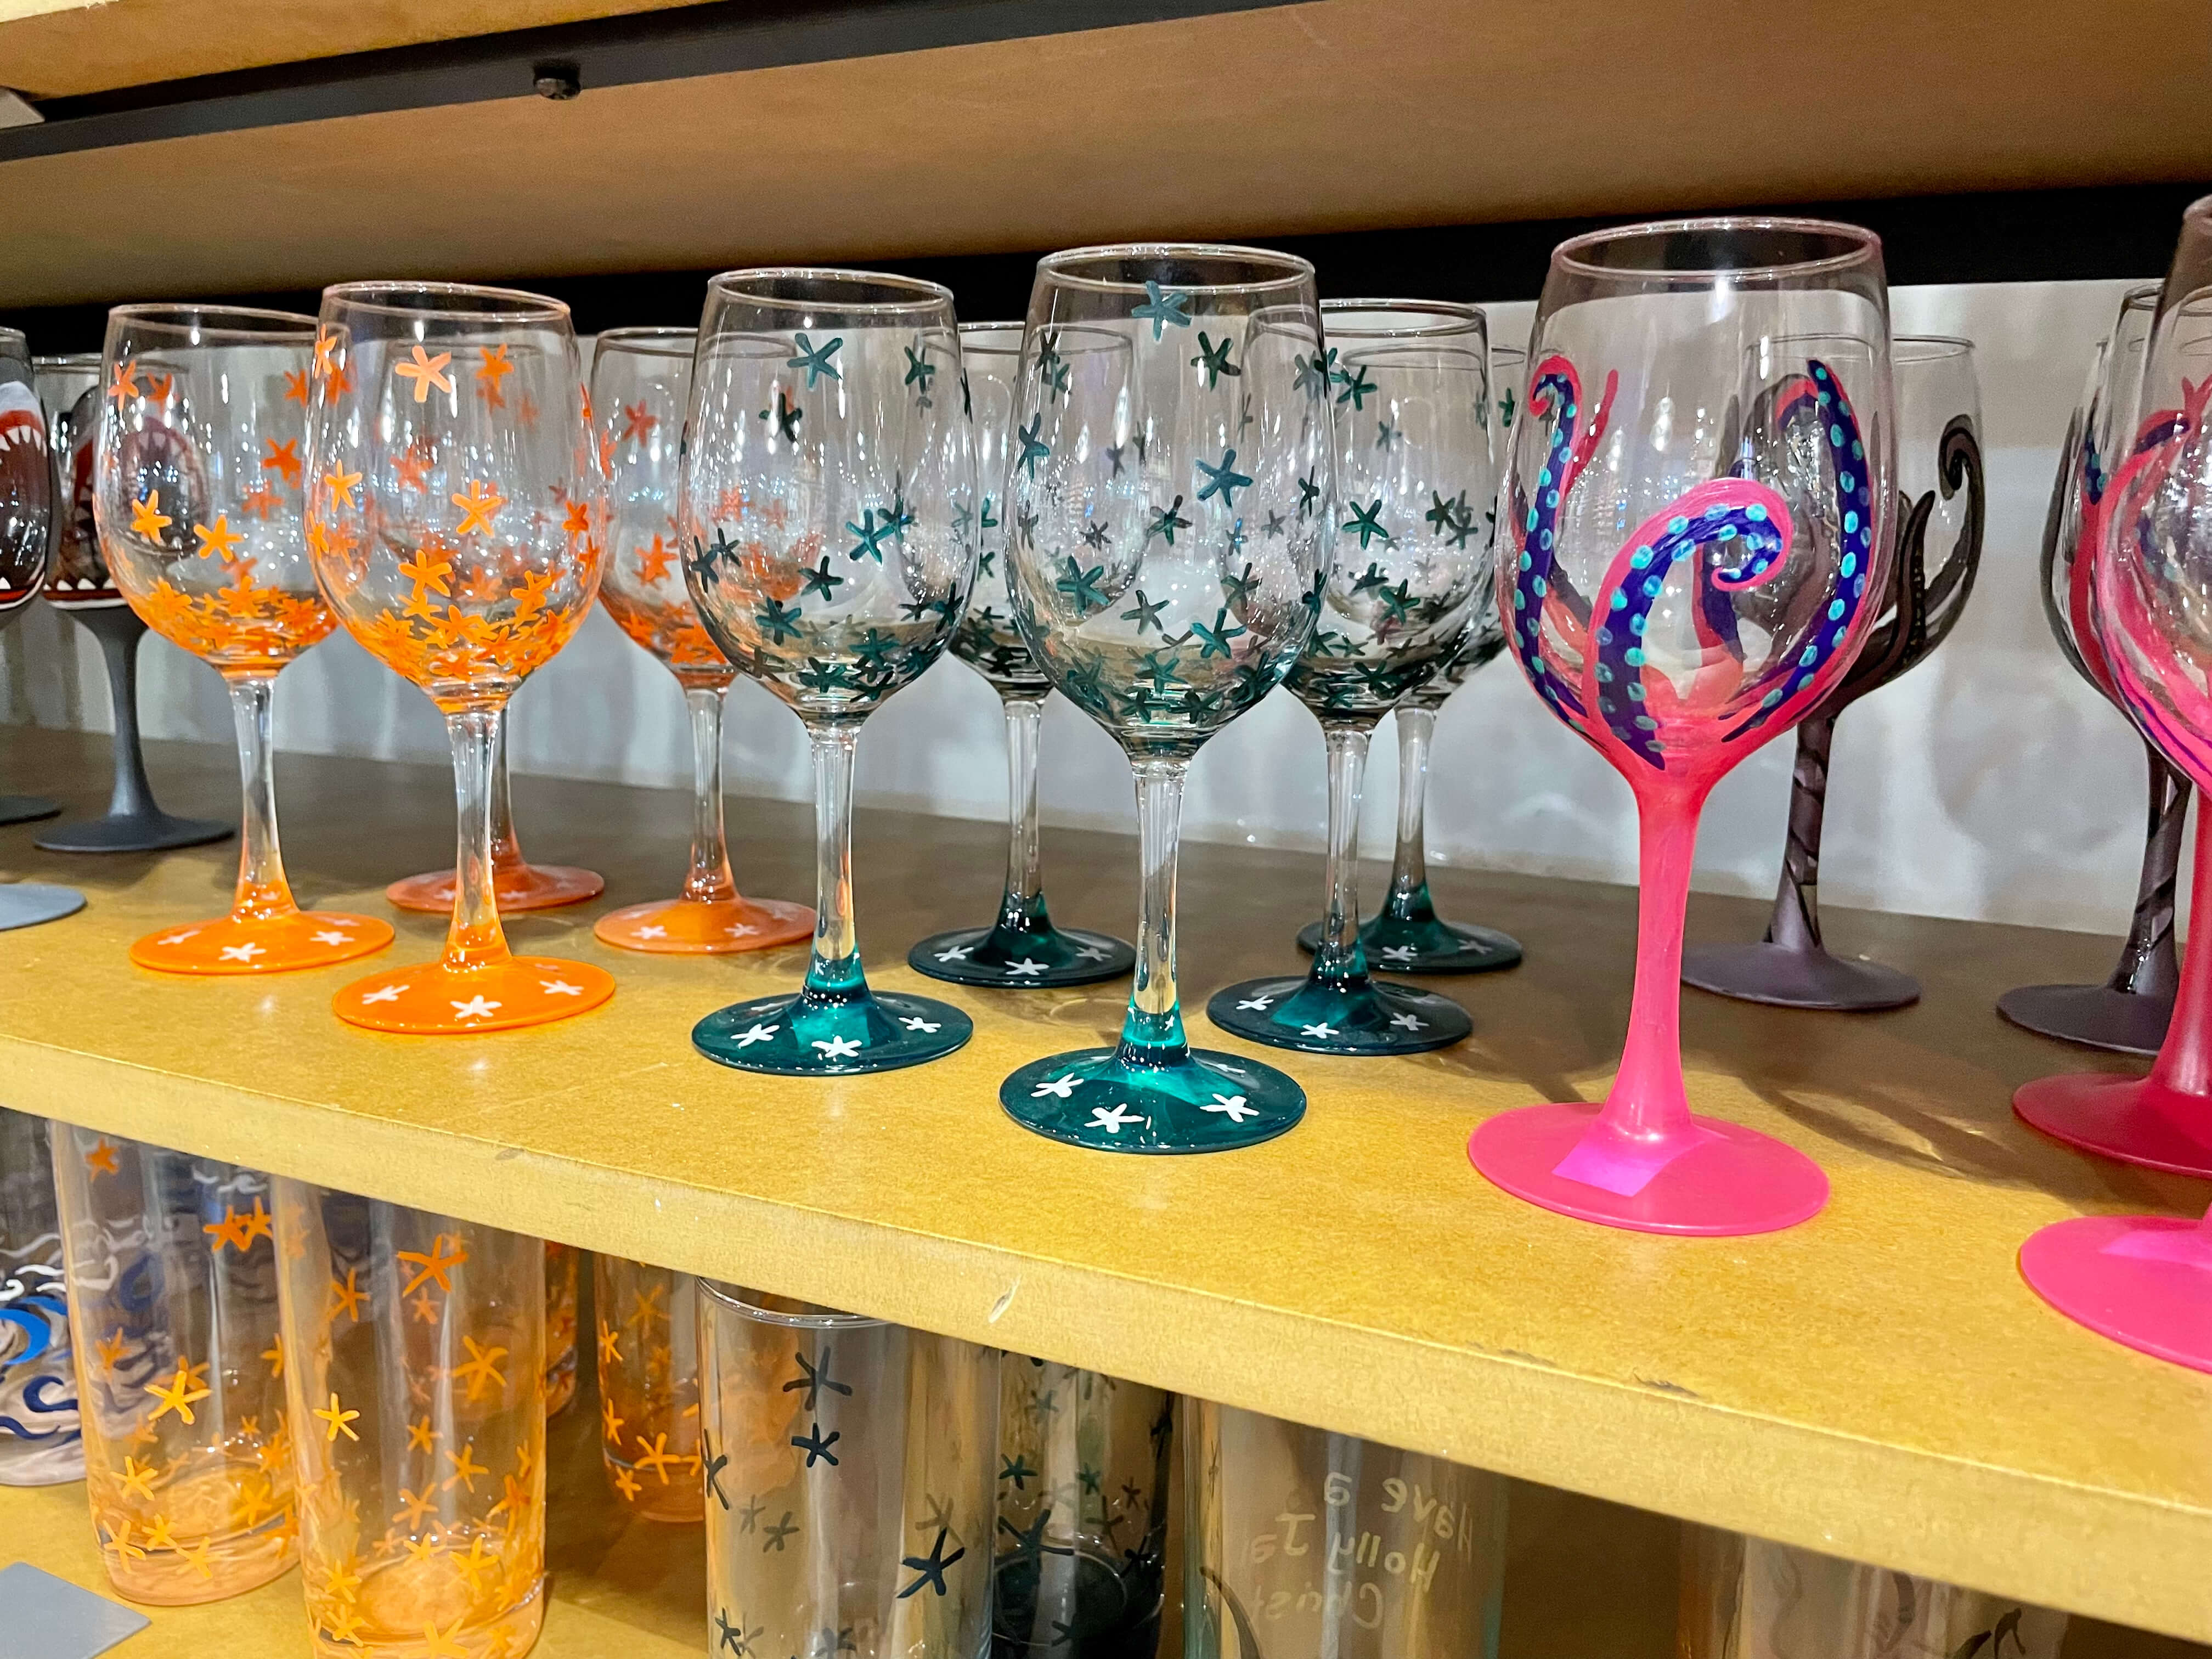 Ocean themed wine glasses